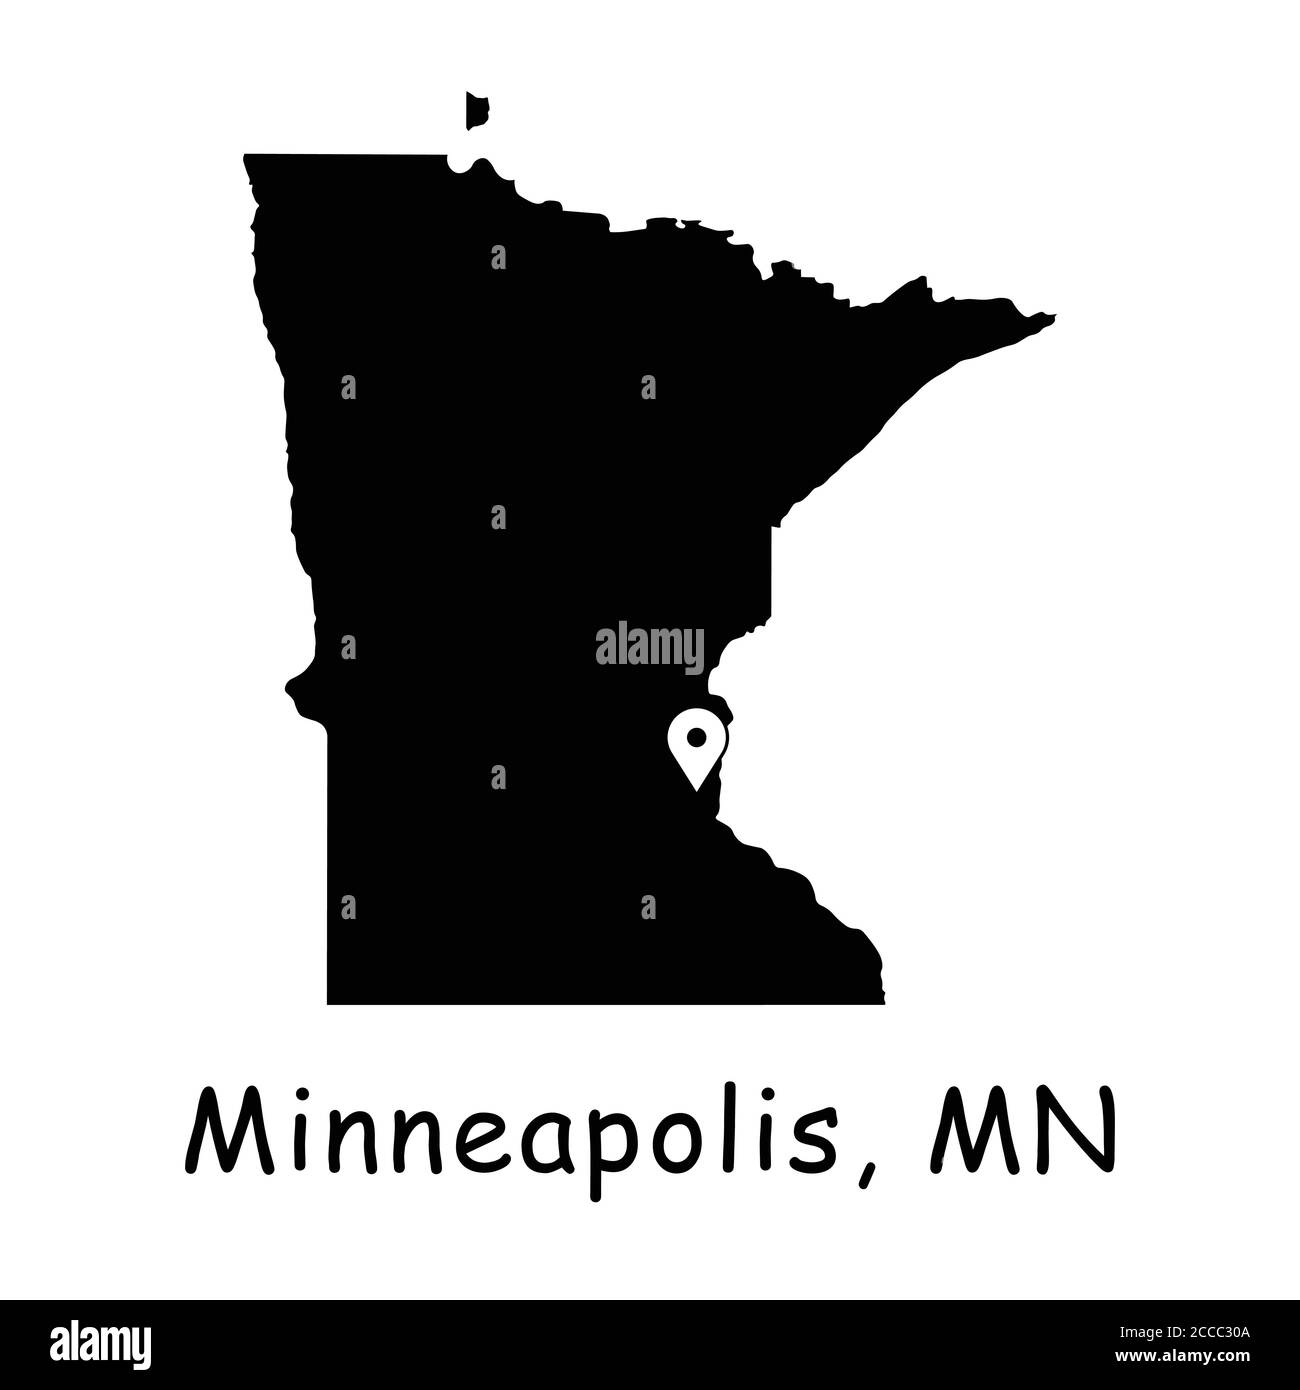 Minneapolis sulla Minnesota state Map. Mappa dettagliata dello stato del Minnesota con pin sulla città di Minneapolis. Mappa vettoriale silhouette nera isolata su sfondo bianco Illustrazione Vettoriale